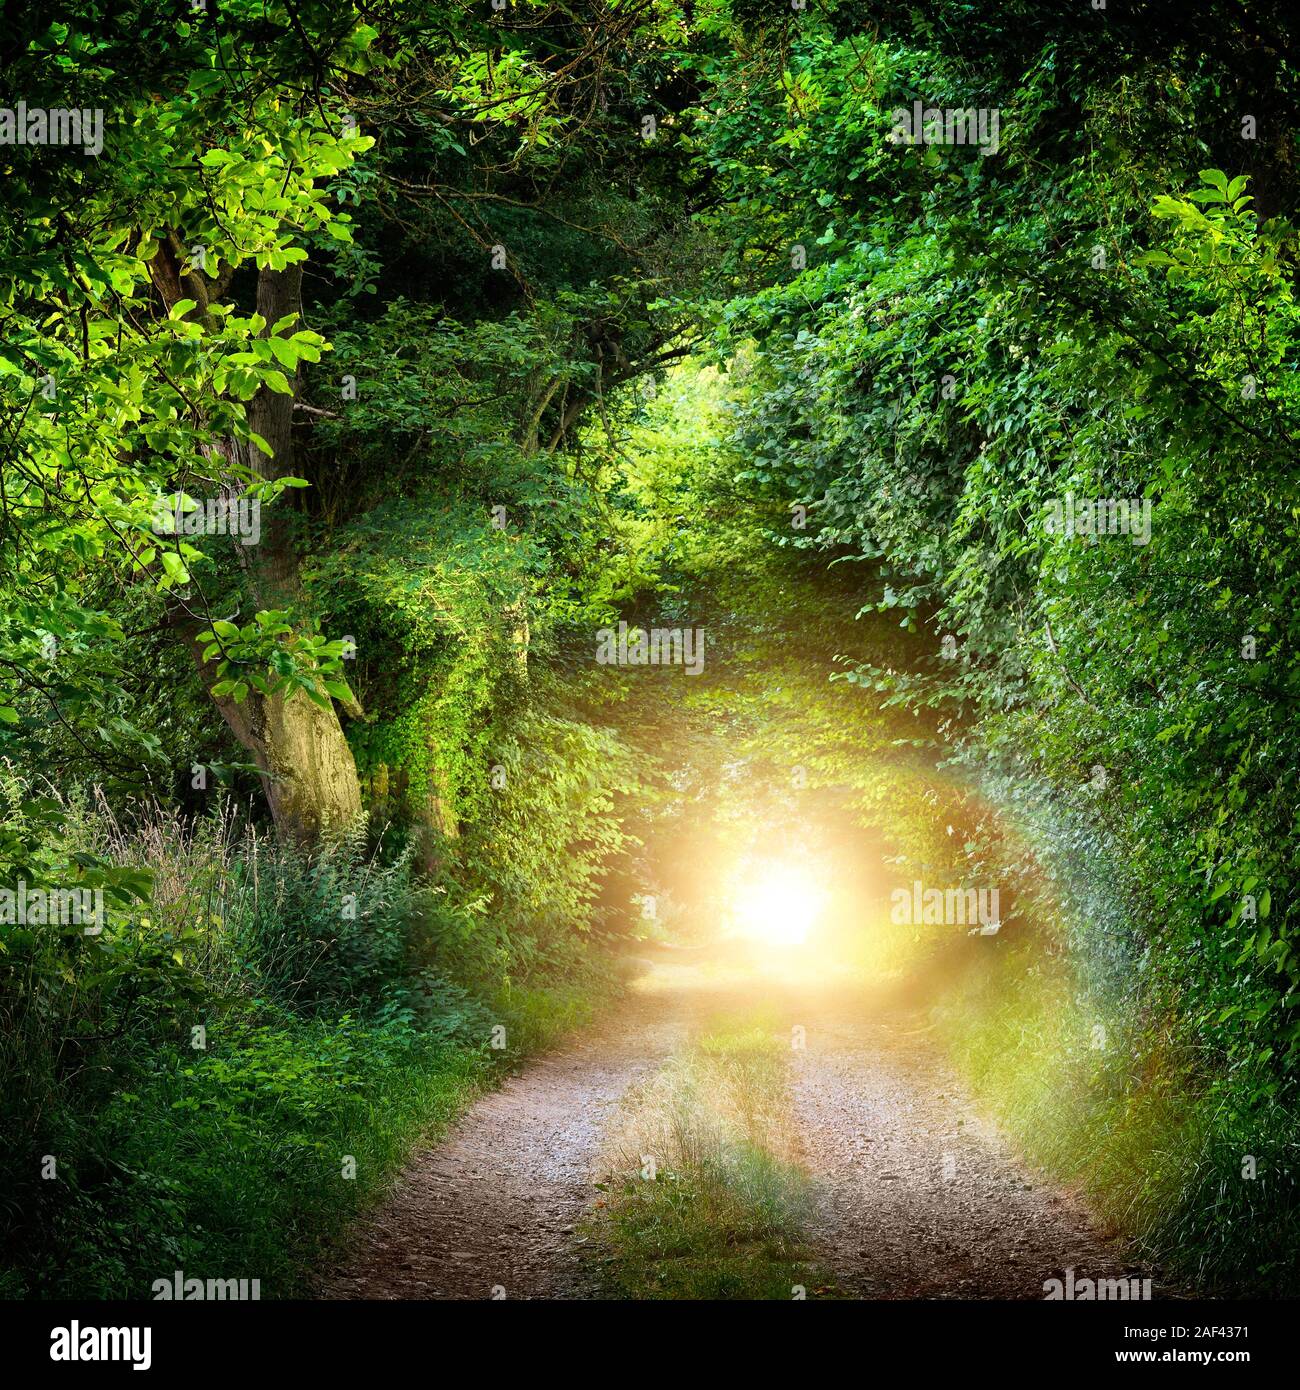 Paysage fantastique avec un tunnel d'arbres lumineux vert sur un chemin forestier menant à une lumière mystérieuse. Photo de nuit en plein air bien éclairé. Banque D'Images